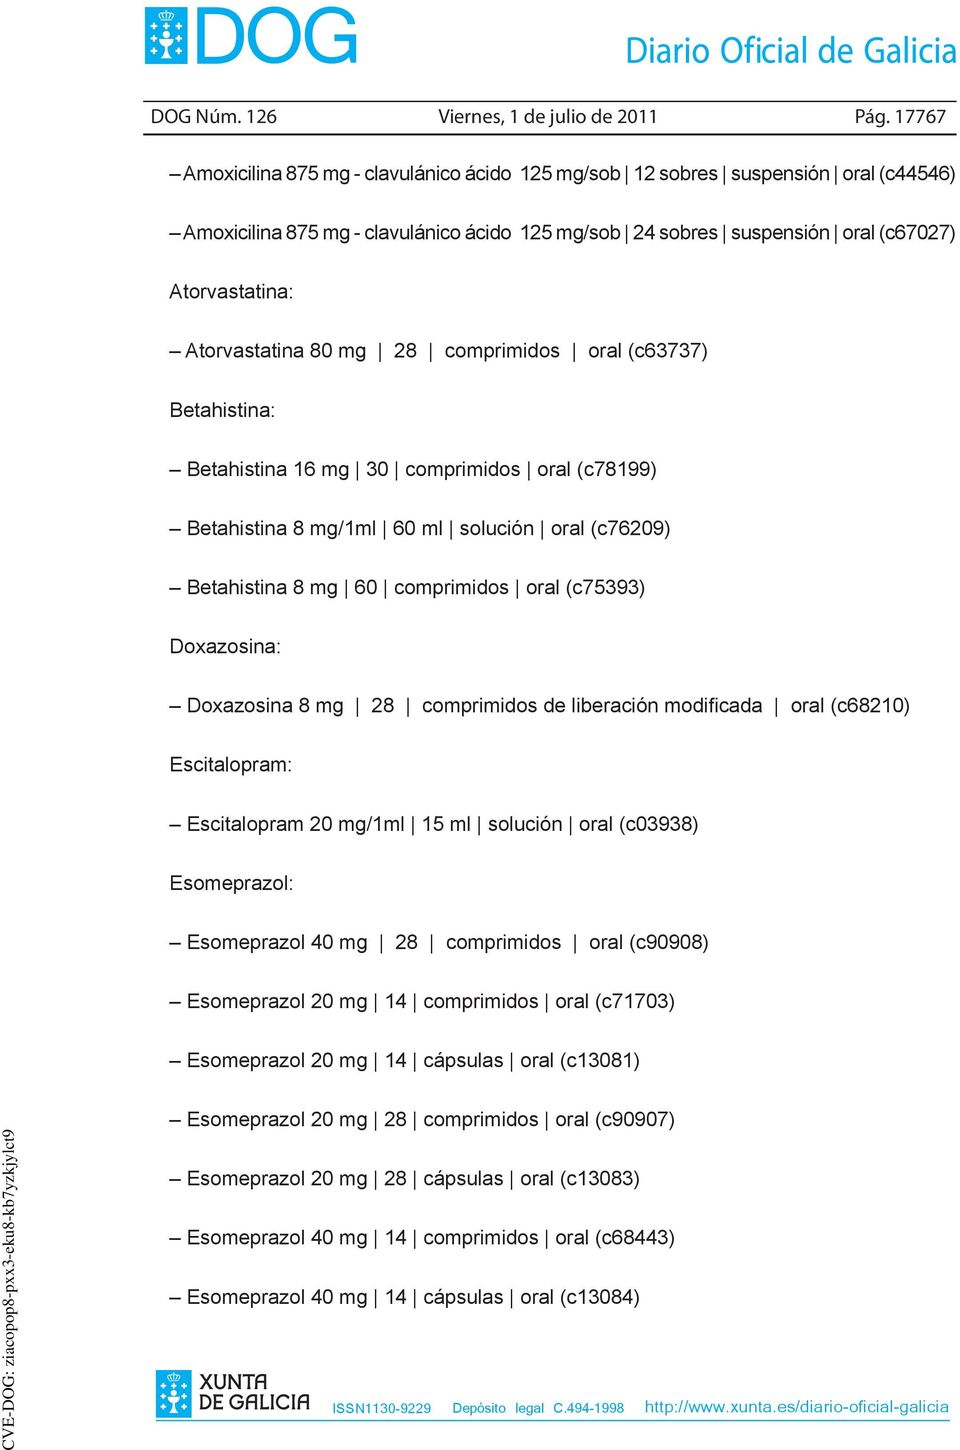 Atorvastatina 80 mg 28 comprimidos oral (c63737) Betahistina: Betahistina 16 mg 30 comprimidos oral (c78199) Betahistina 8 mg/1ml 60 ml solución oral (c76209) Betahistina 8 mg 60 comprimidos oral